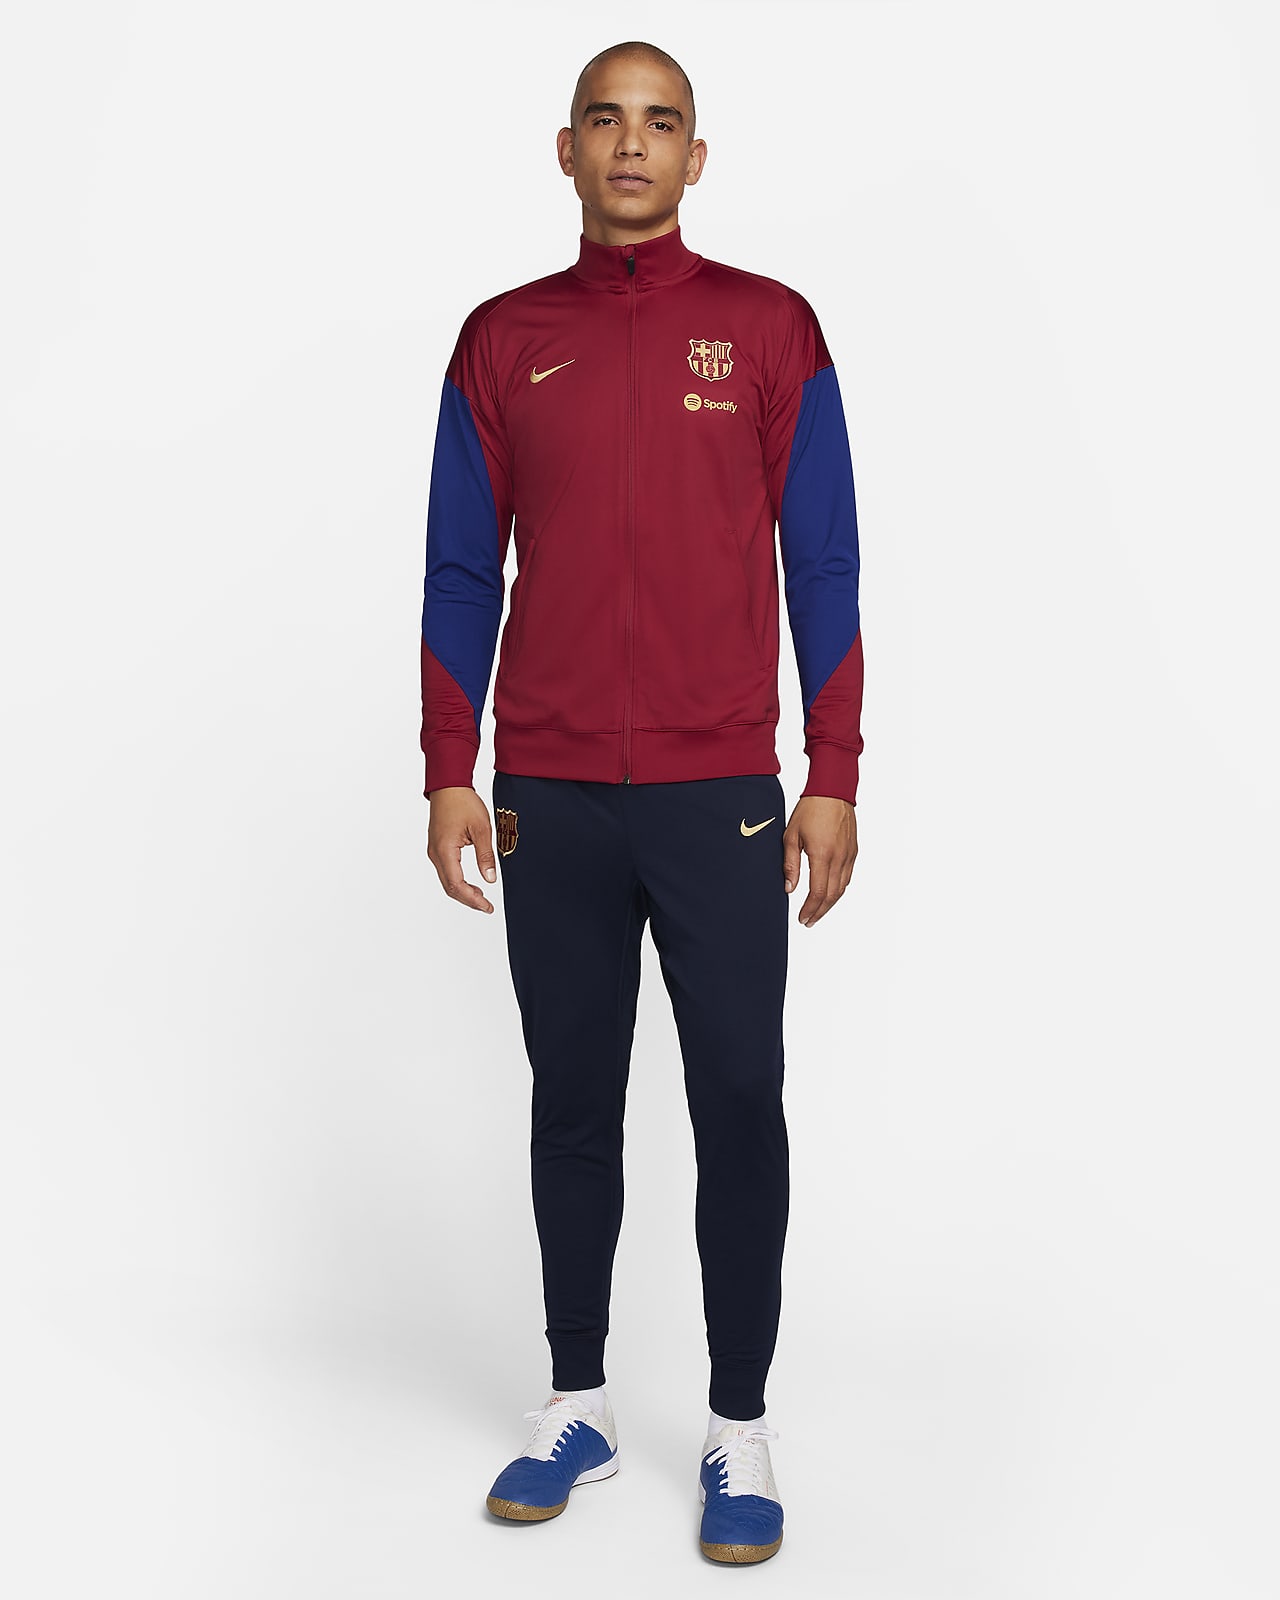 Ανδρική ποδοσφαιρική πλεκτή φόρμα Nike Dri-FIT Μπαρτσελόνα Strike